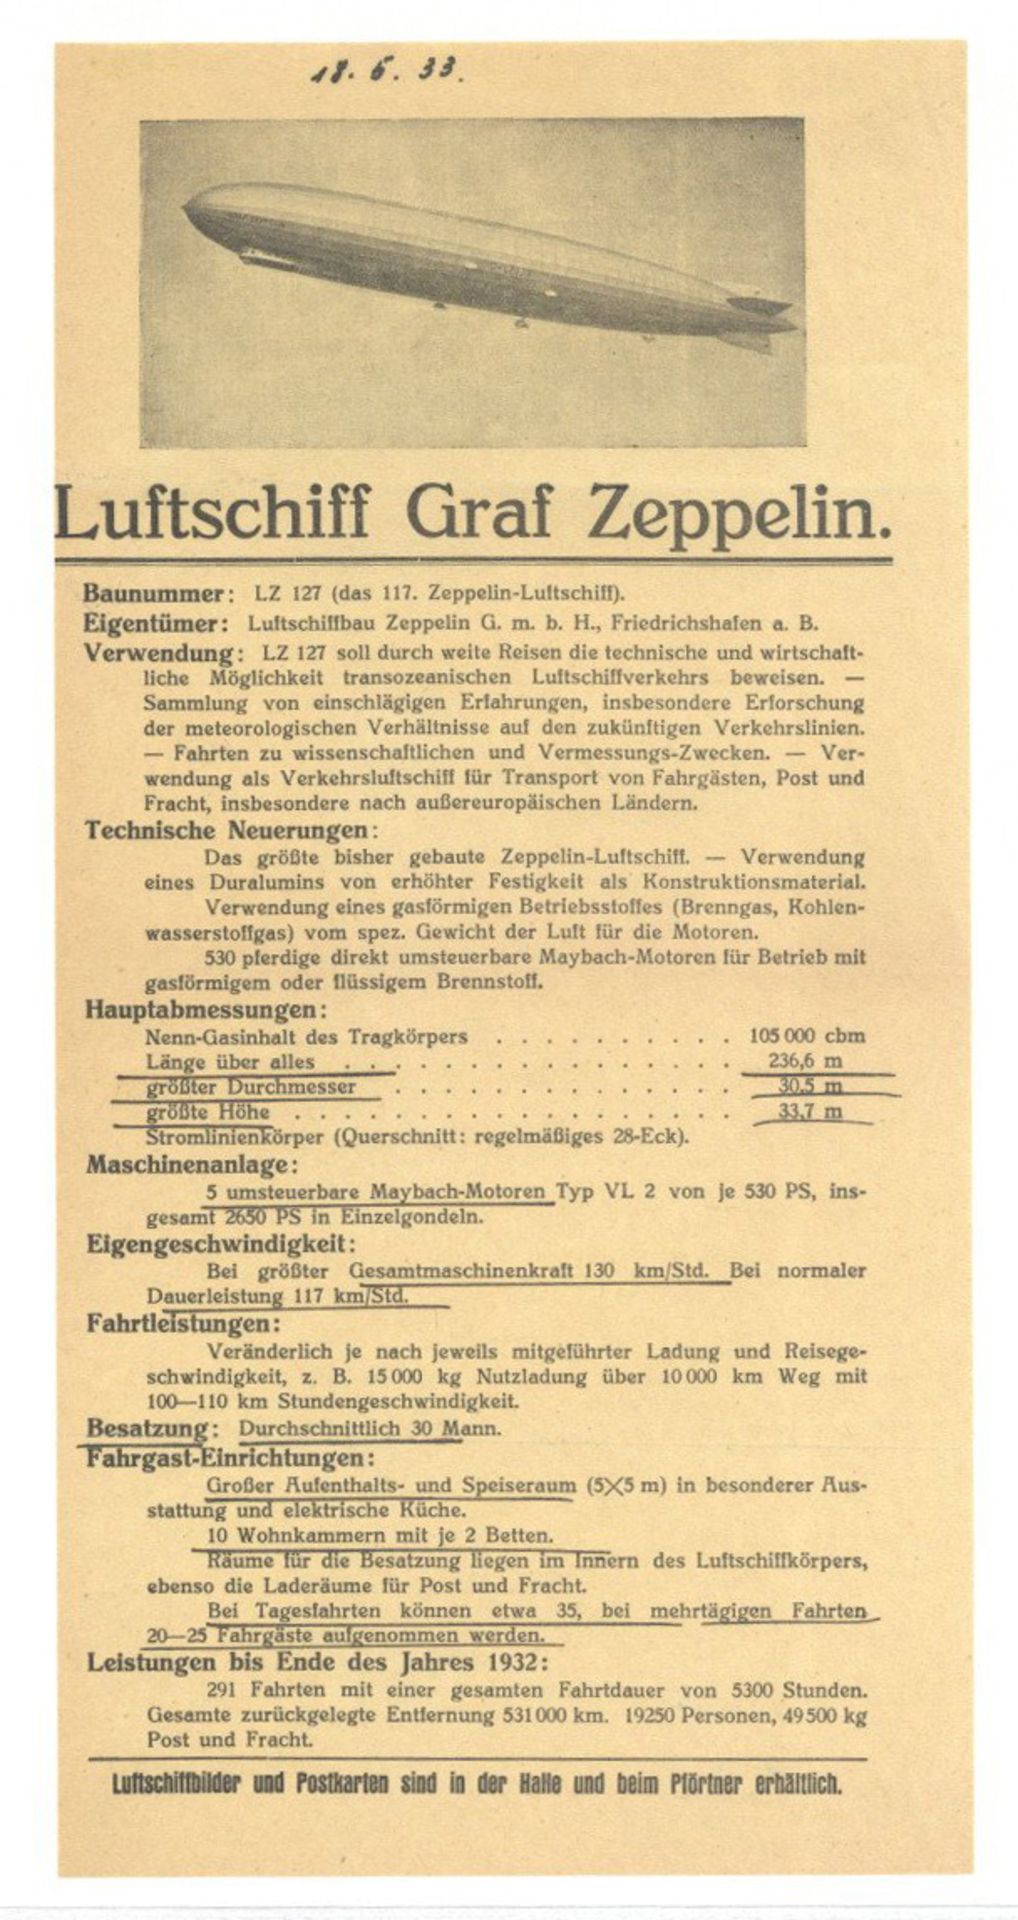 Zeppelin LZ 127 Graf Zeppelin 1 Typen Infoblattt circa 1933 I-II